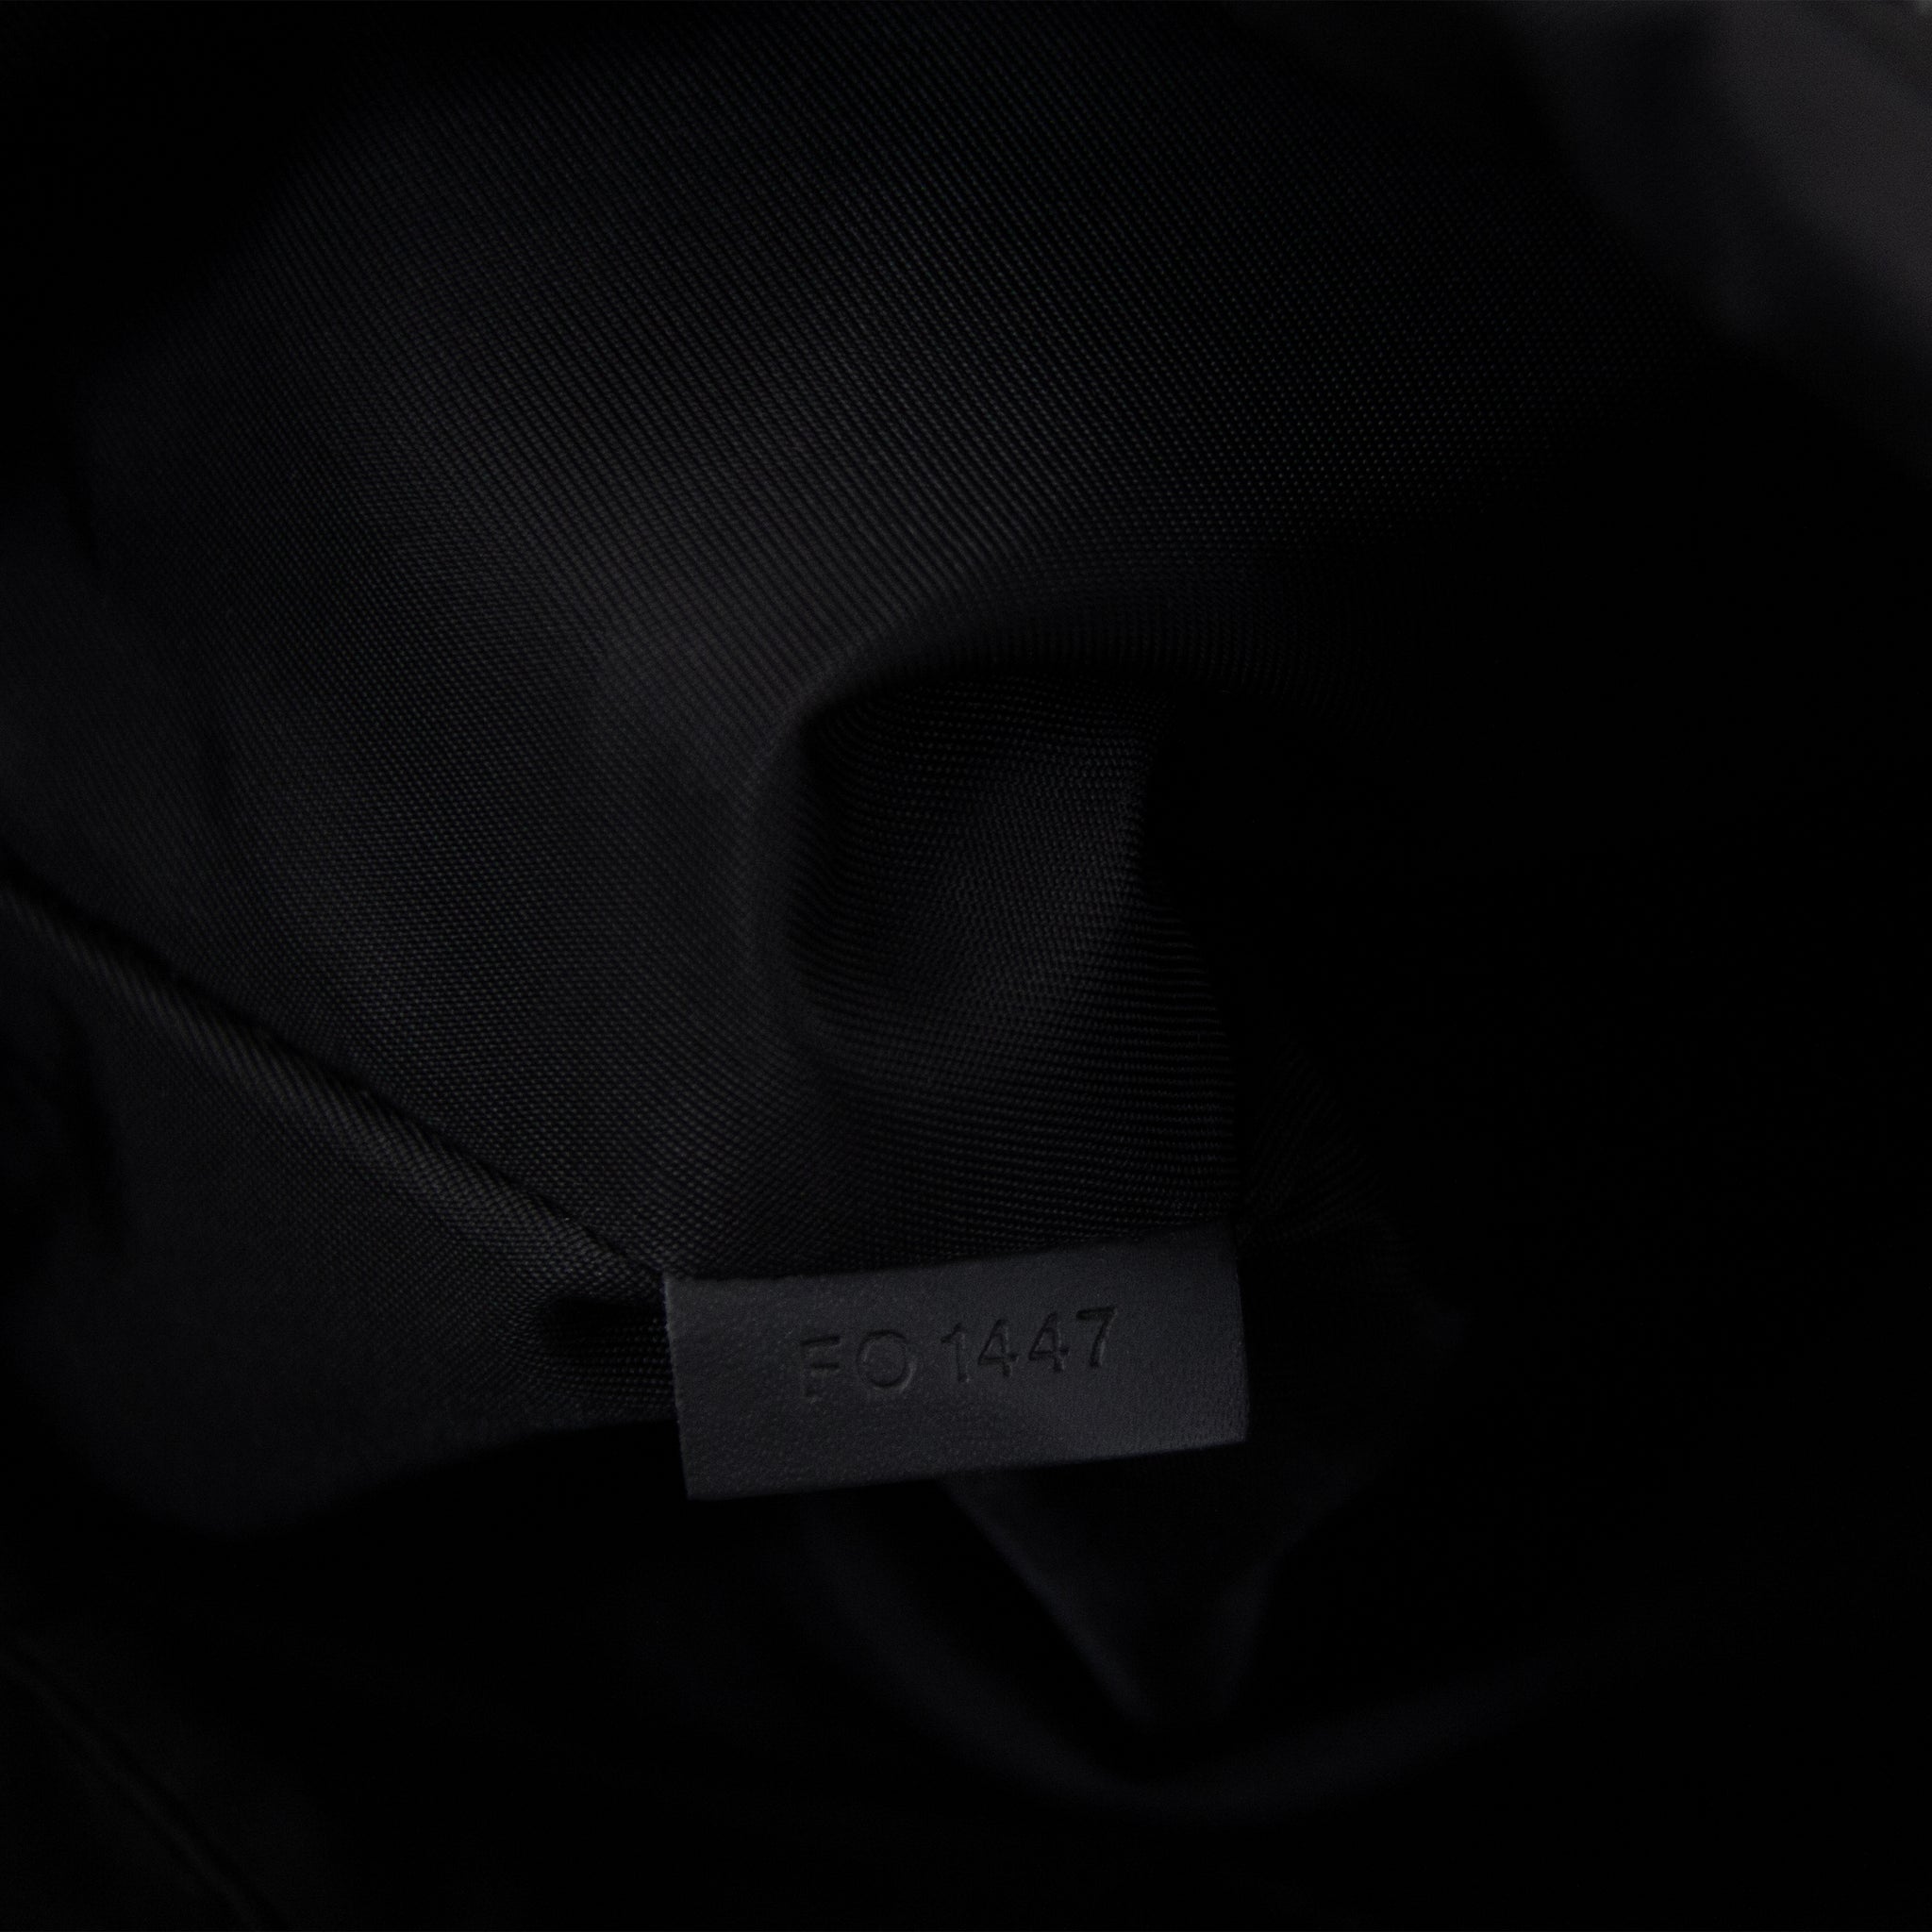 Louis Vuitton Apollo x Fragment Monogram Eslipe Backpack